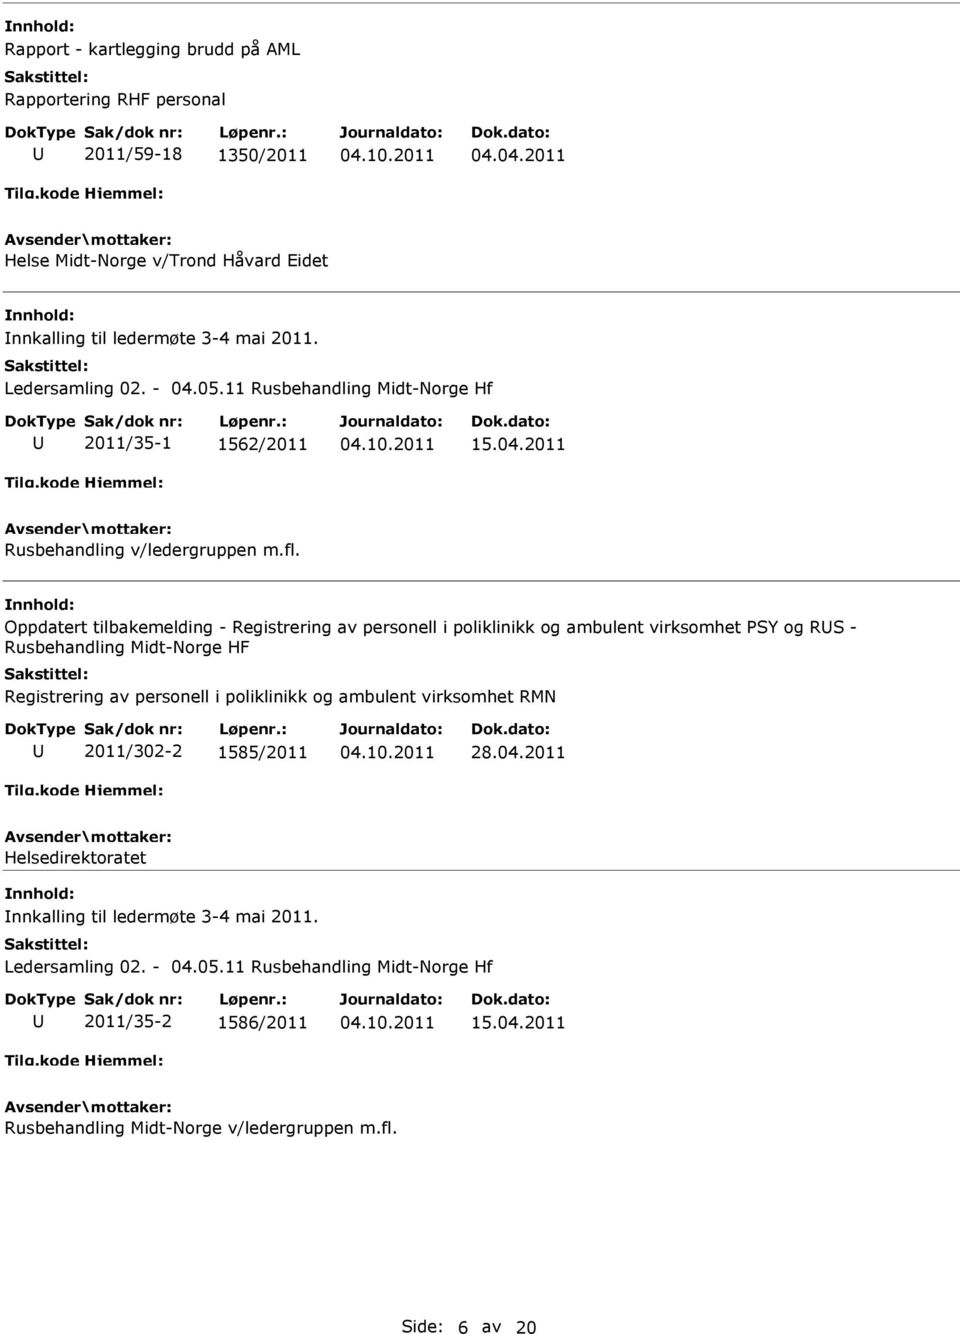 Oppdatert tilbakemelding - Registrering av personell i poliklinikk og ambulent virksomhet SY og RS - Rusbehandling Midt-Norge HF Registrering av personell i poliklinikk og ambulent